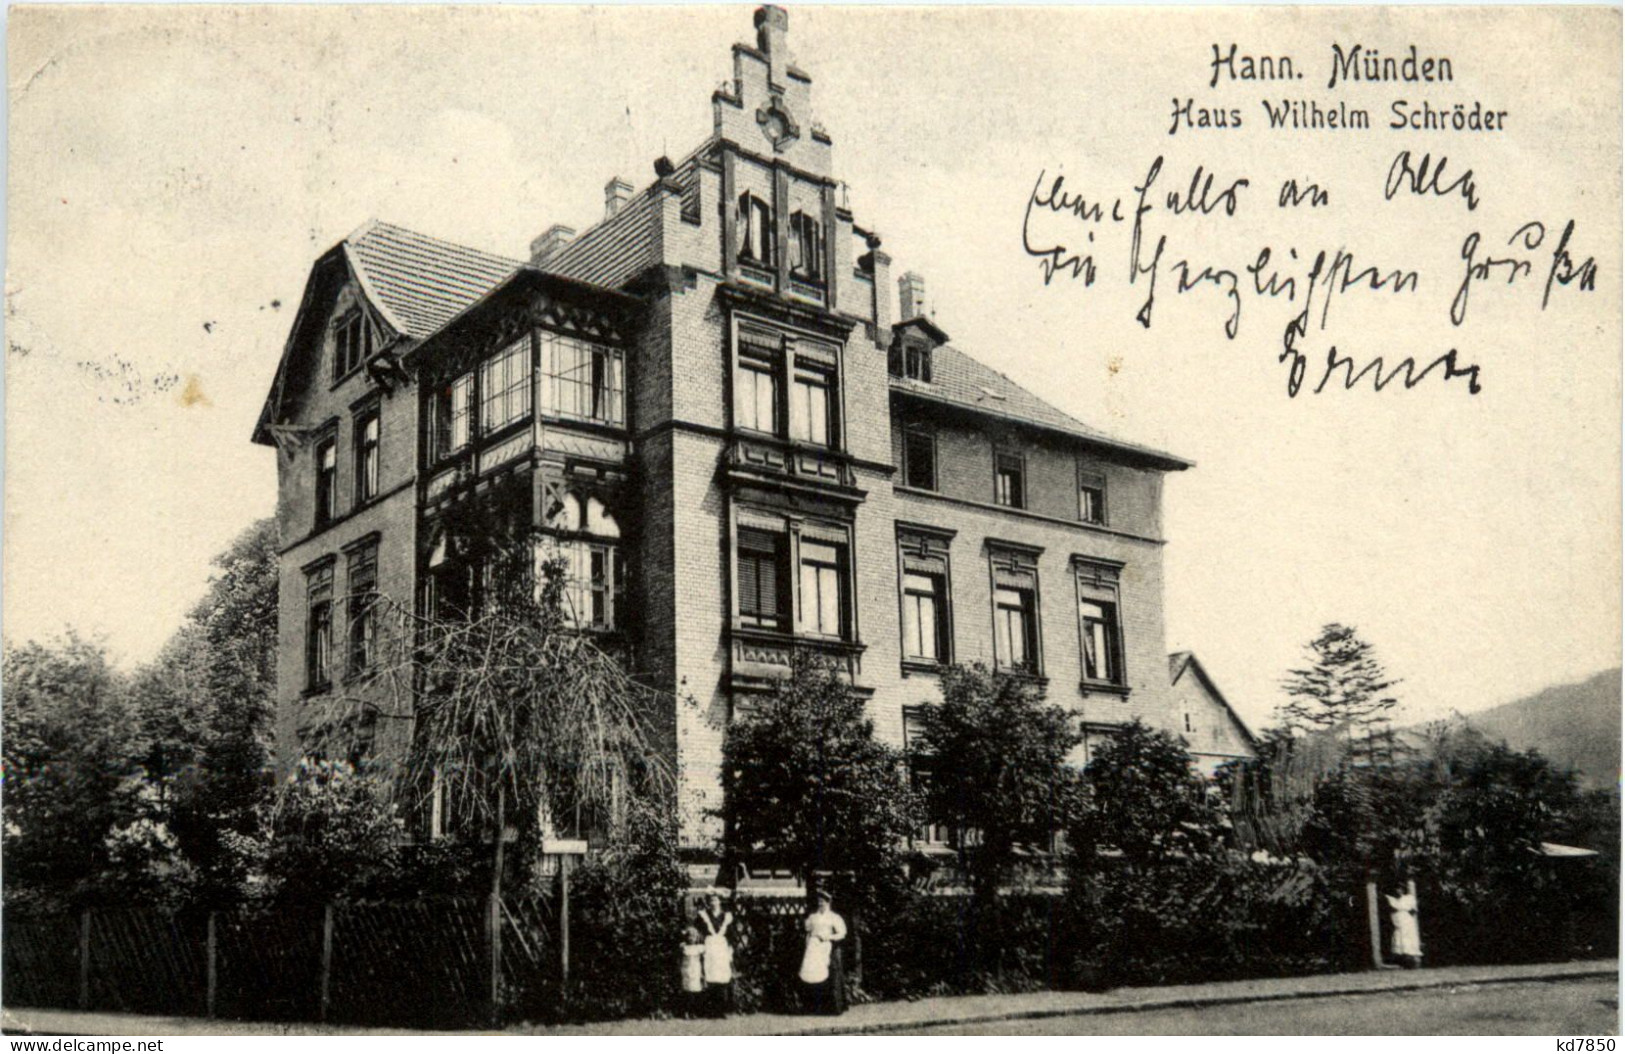 Hann. Münden - Haus Wilhelm Schröder - Hannoversch Muenden